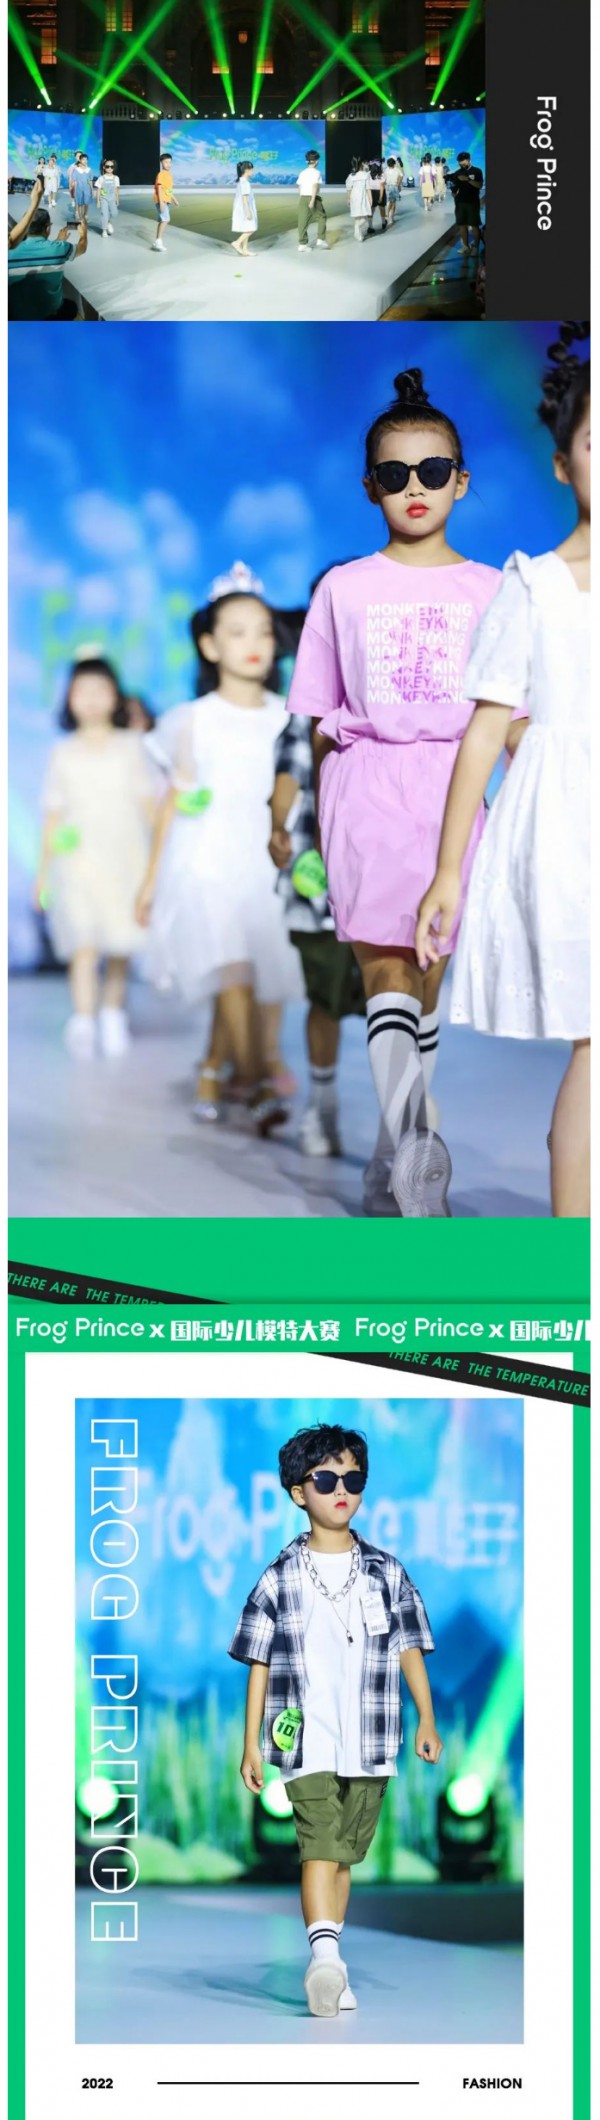 青蛙王子童装 X 国际少儿模特大赛,支持孩子志向成长